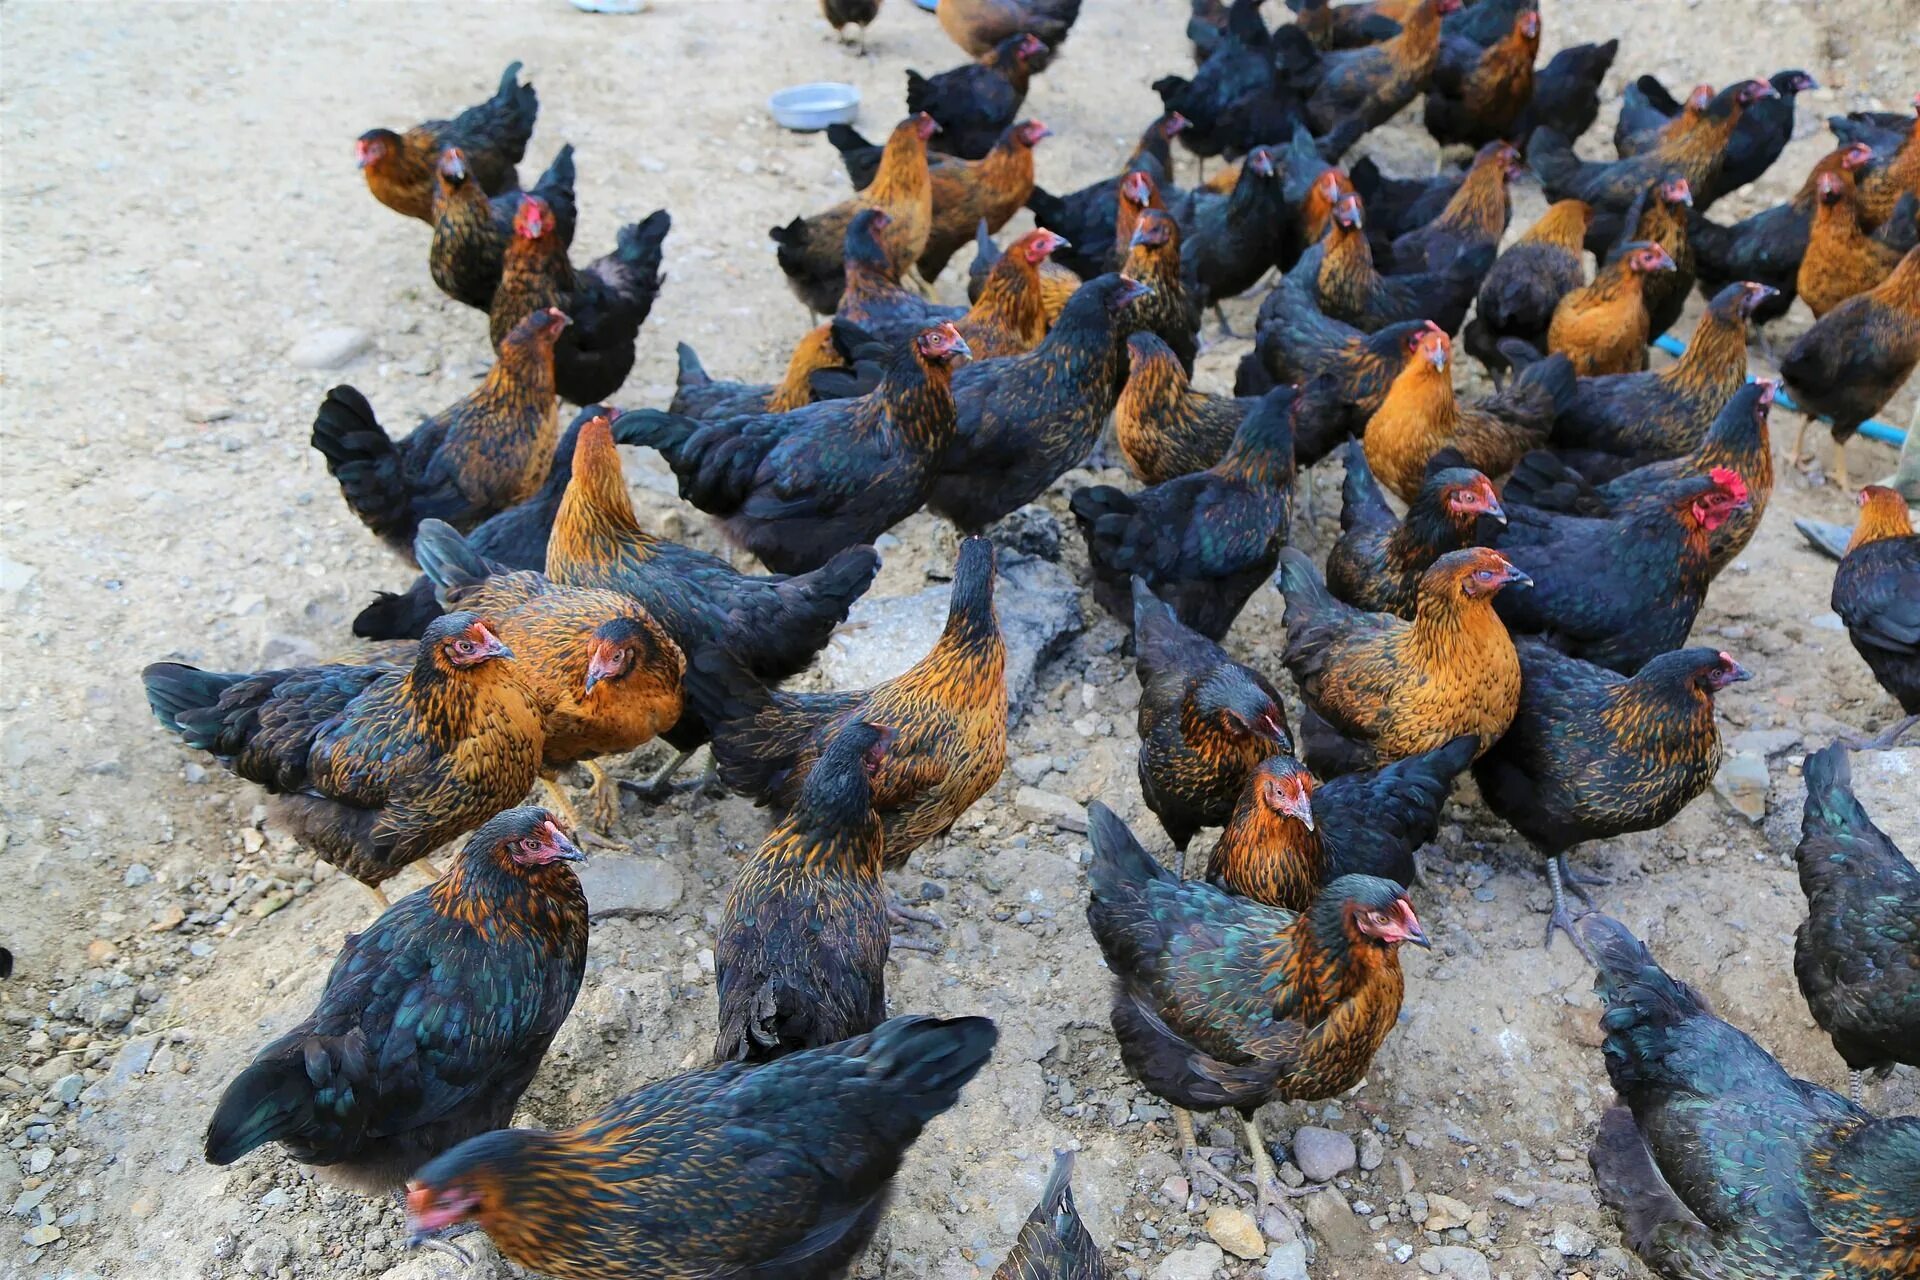 Your chickens. Султанка куры. Турецкие куры. Курицы в Турции. Куры породы турецкая султанка.